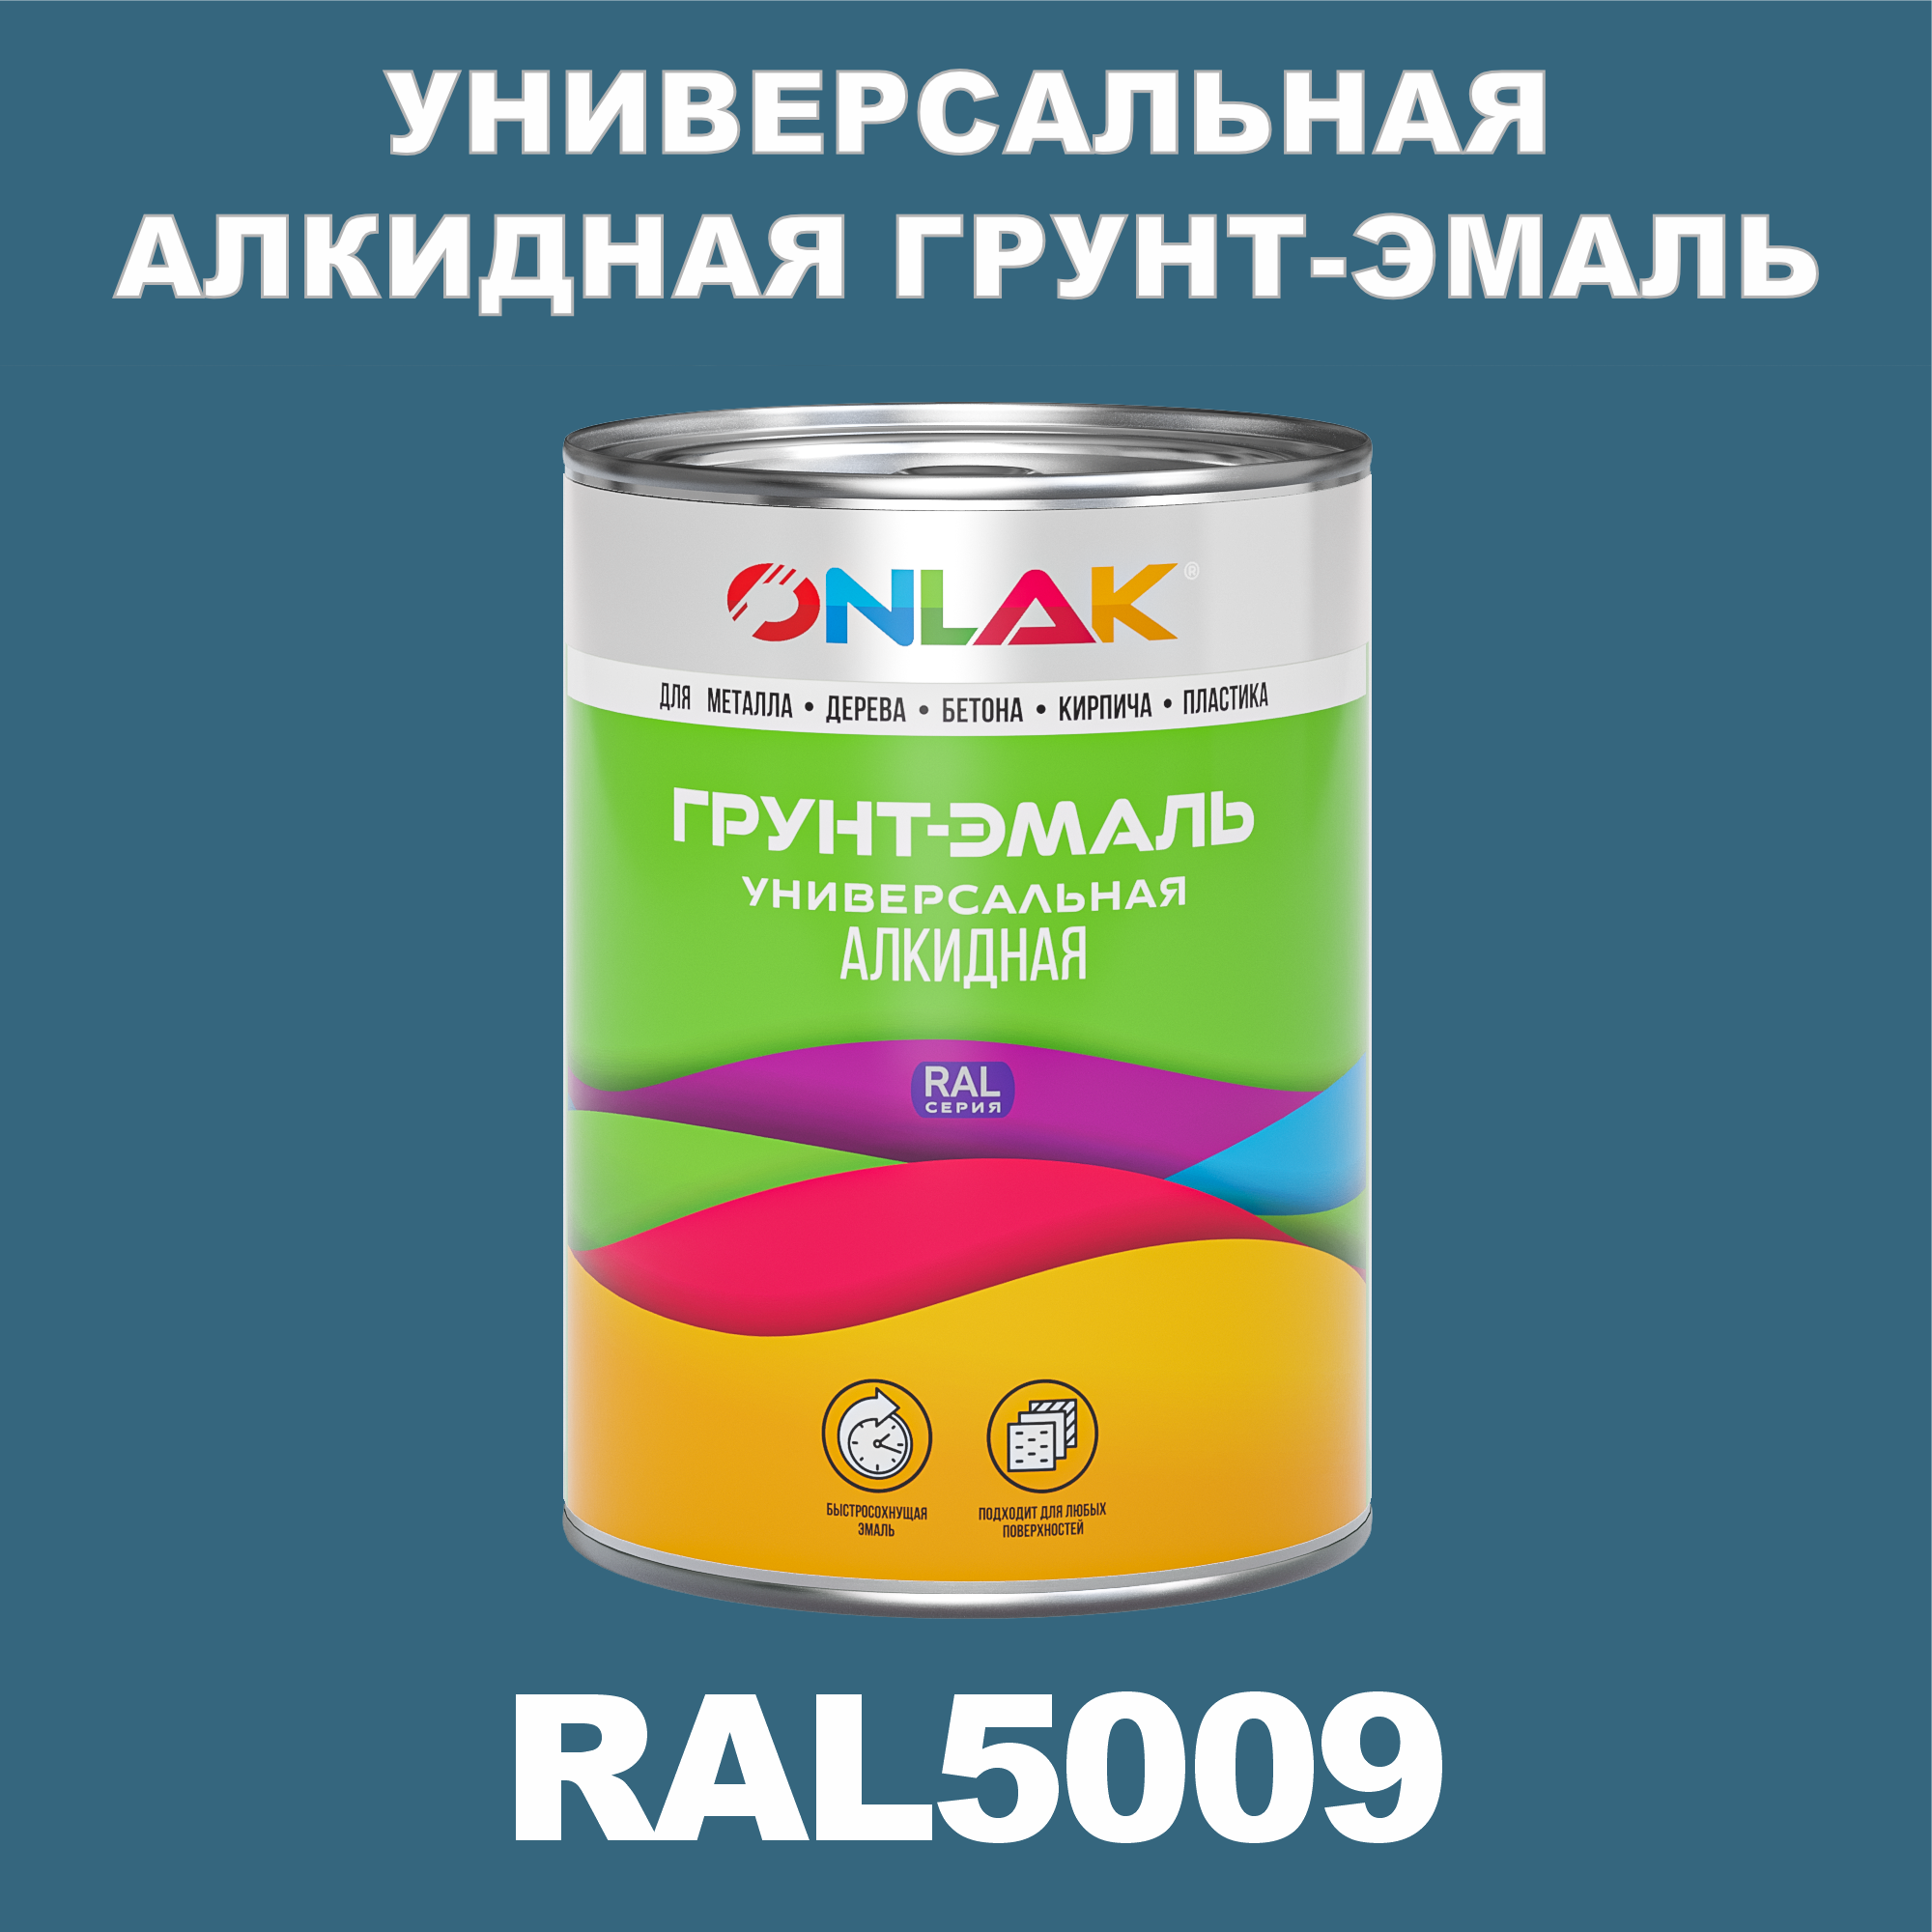 Грунт-эмаль ONLAK 1К RAL5009 антикоррозионная алкидная по металлу по ржавчине 1 кг грунт эмаль престиж по ржавчине алкидная зеленая 1 9 кг